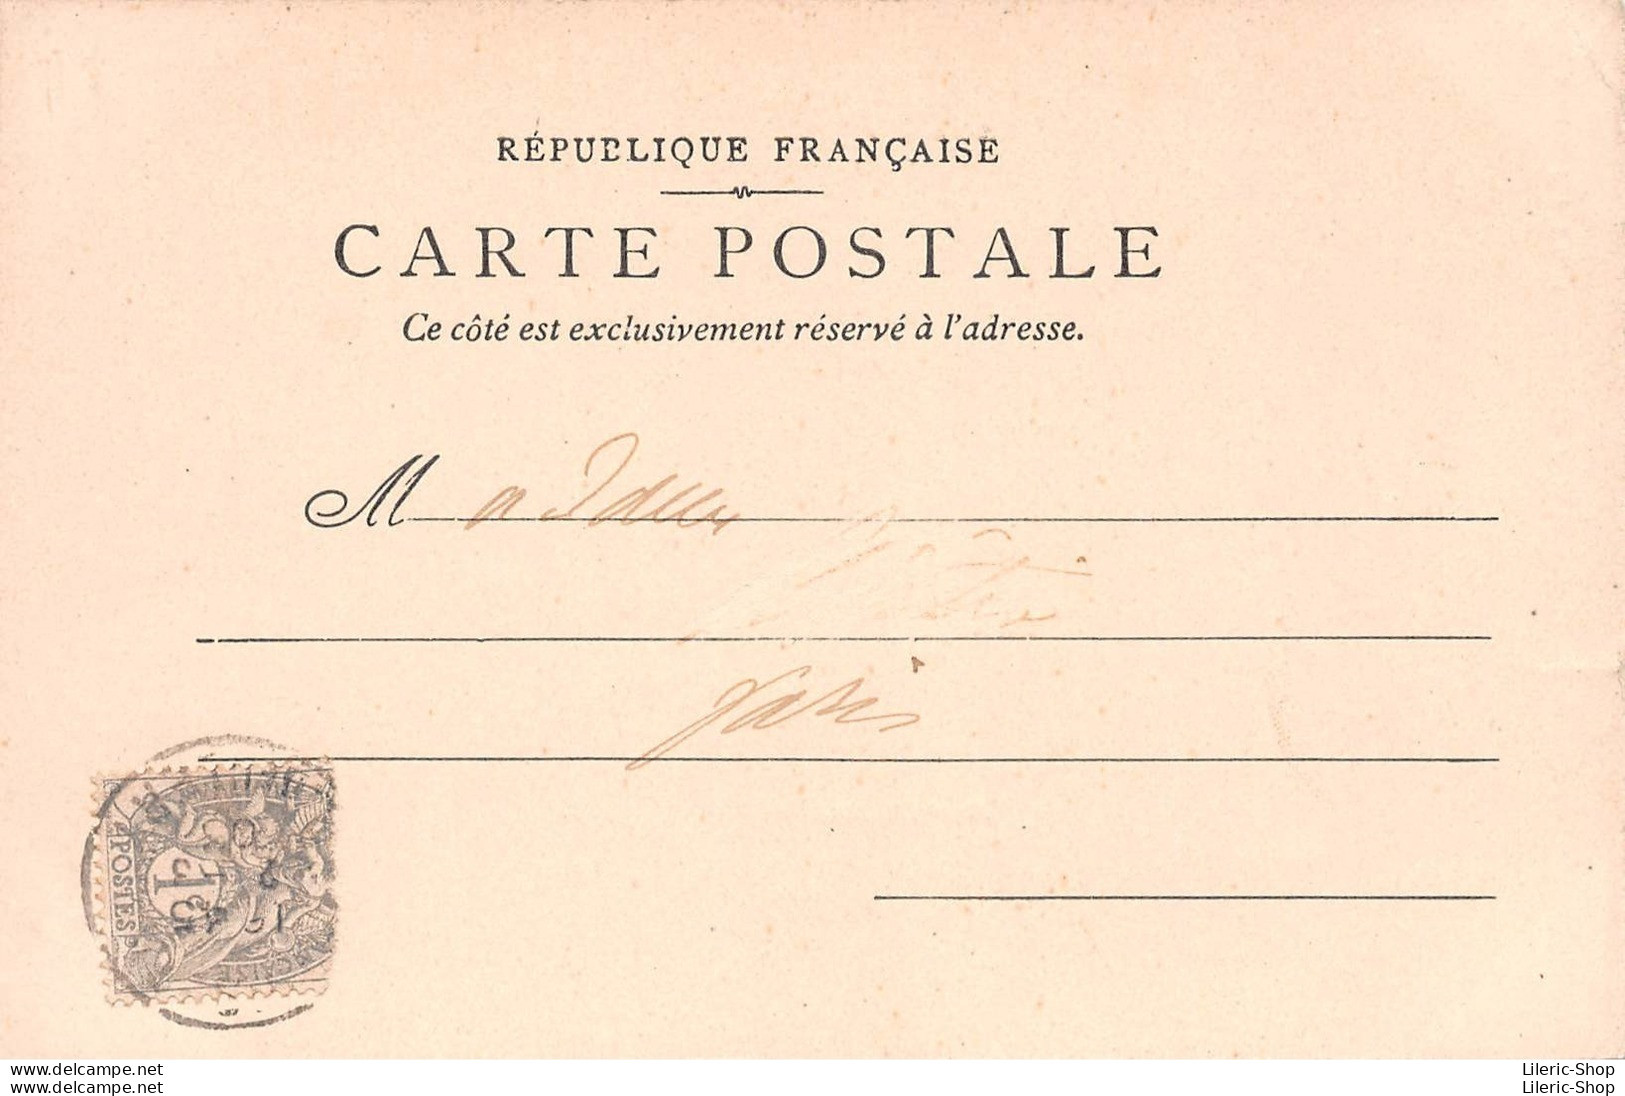 Musée Carnavalet - Journée Du 21 01 1793 - Mort De Louis Capet Sur La Place De La Révolution - Éd. P.S. 1903 CPR - Musées